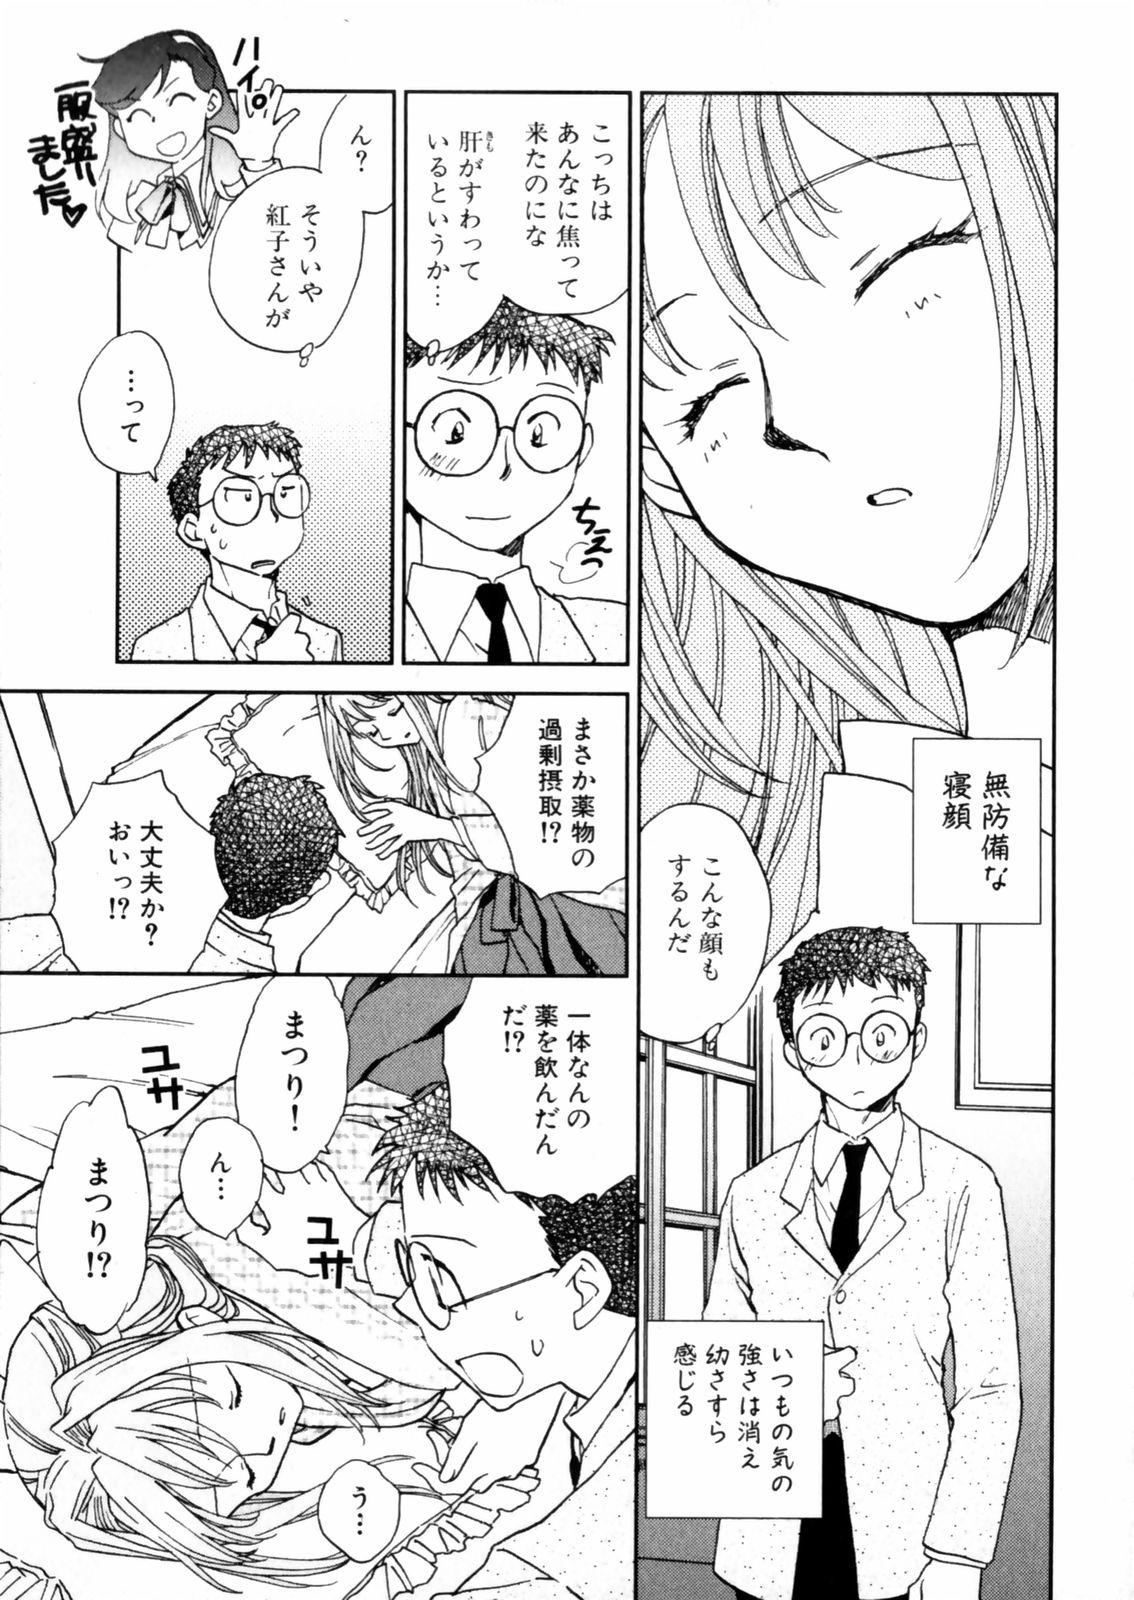 [Okano Ahiru] Hanasake ! Otome Juku (Otome Private Tutoring School) Vol.2 90